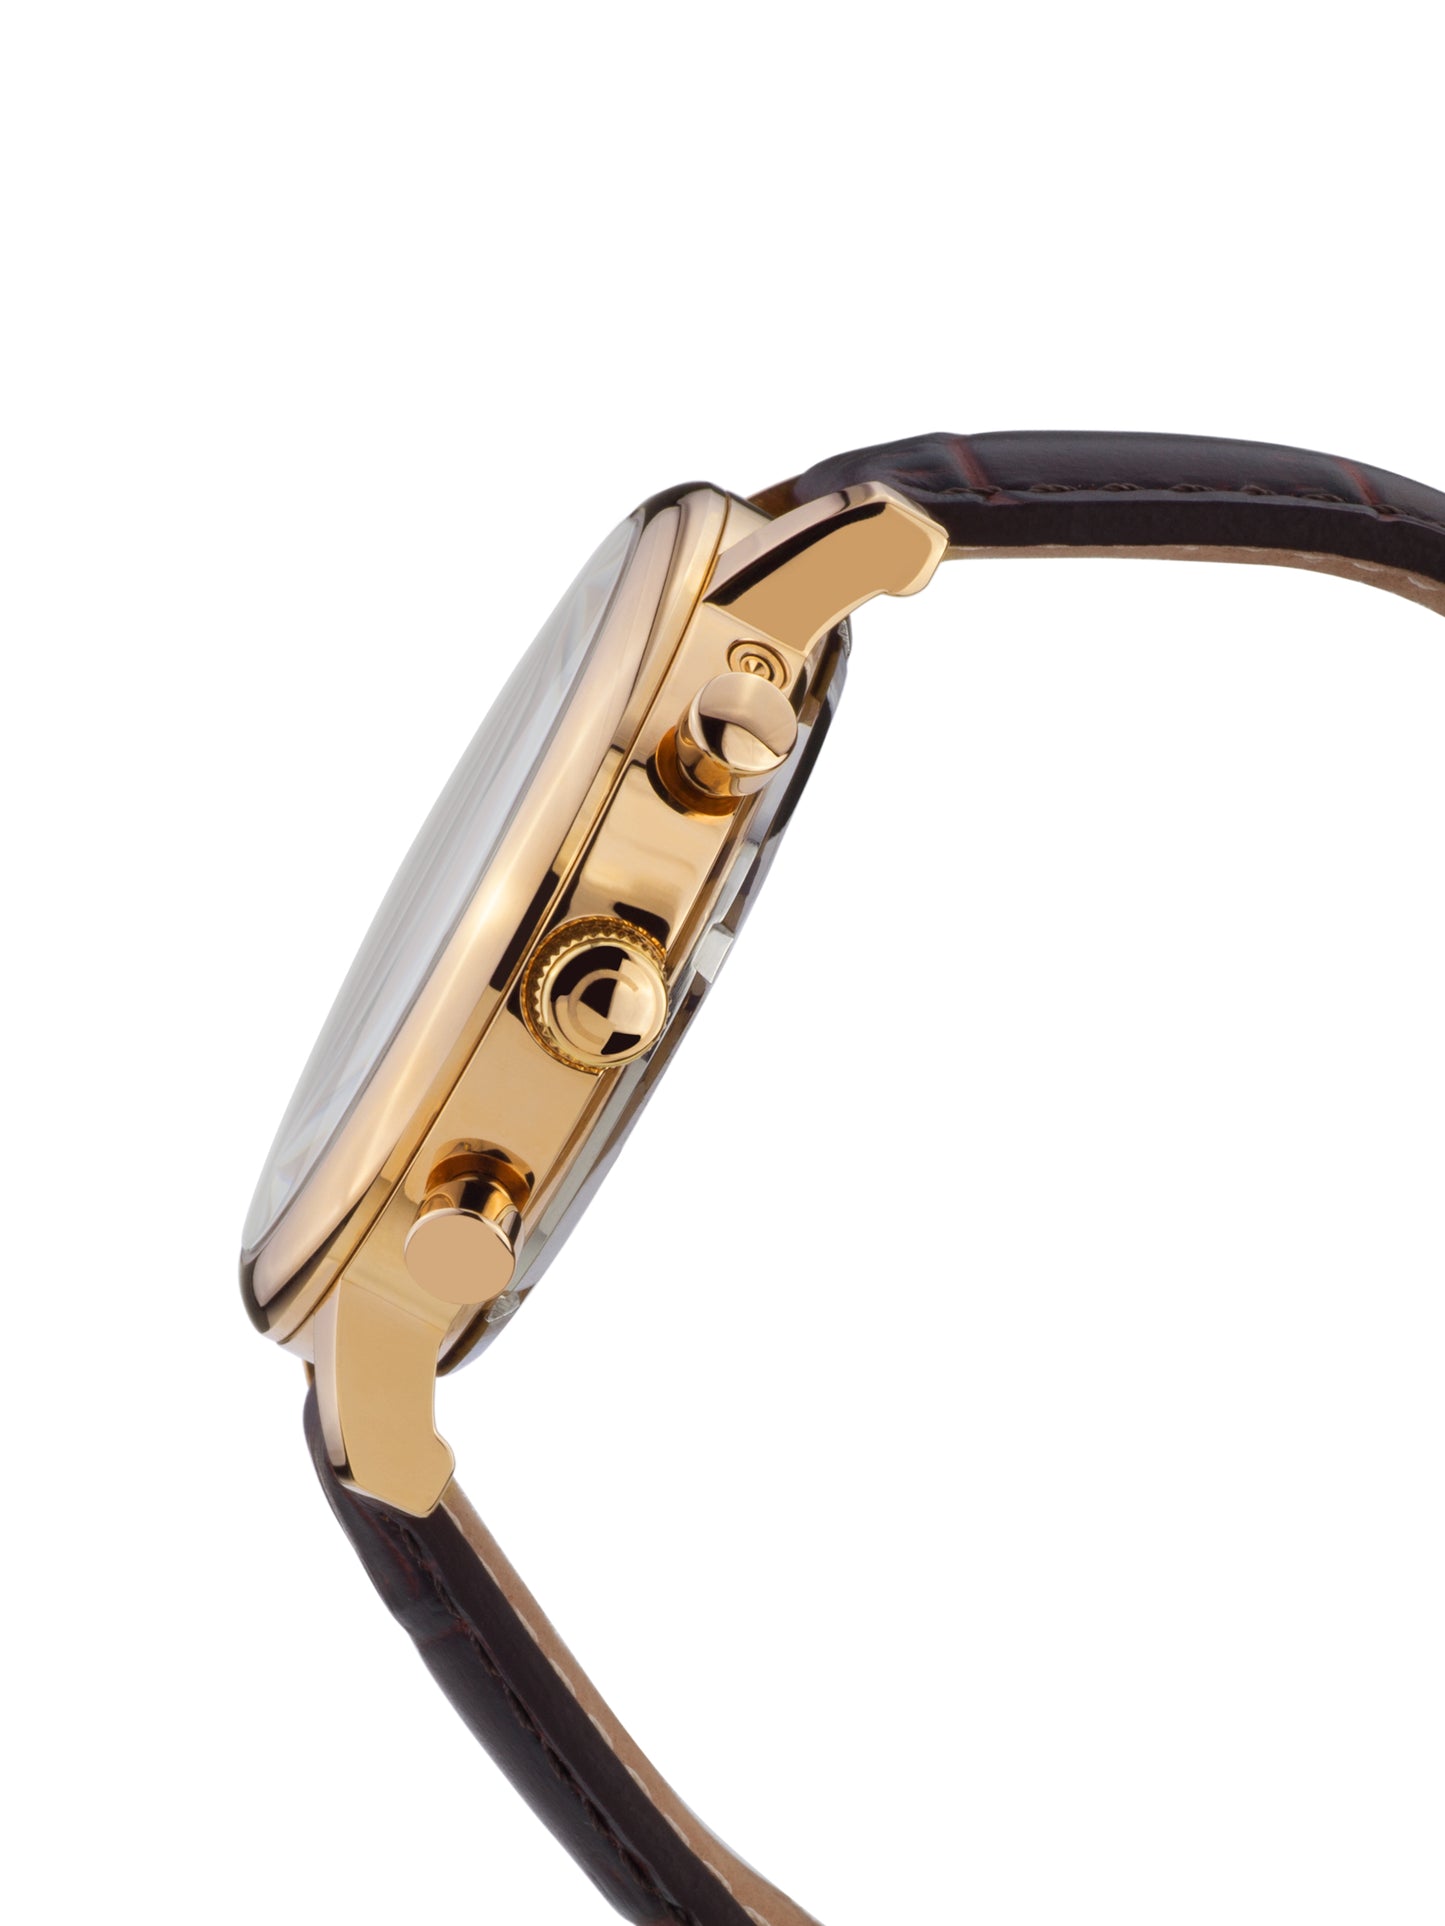 Automatic watches — Argos — Chrono Diamond — gold IP brown